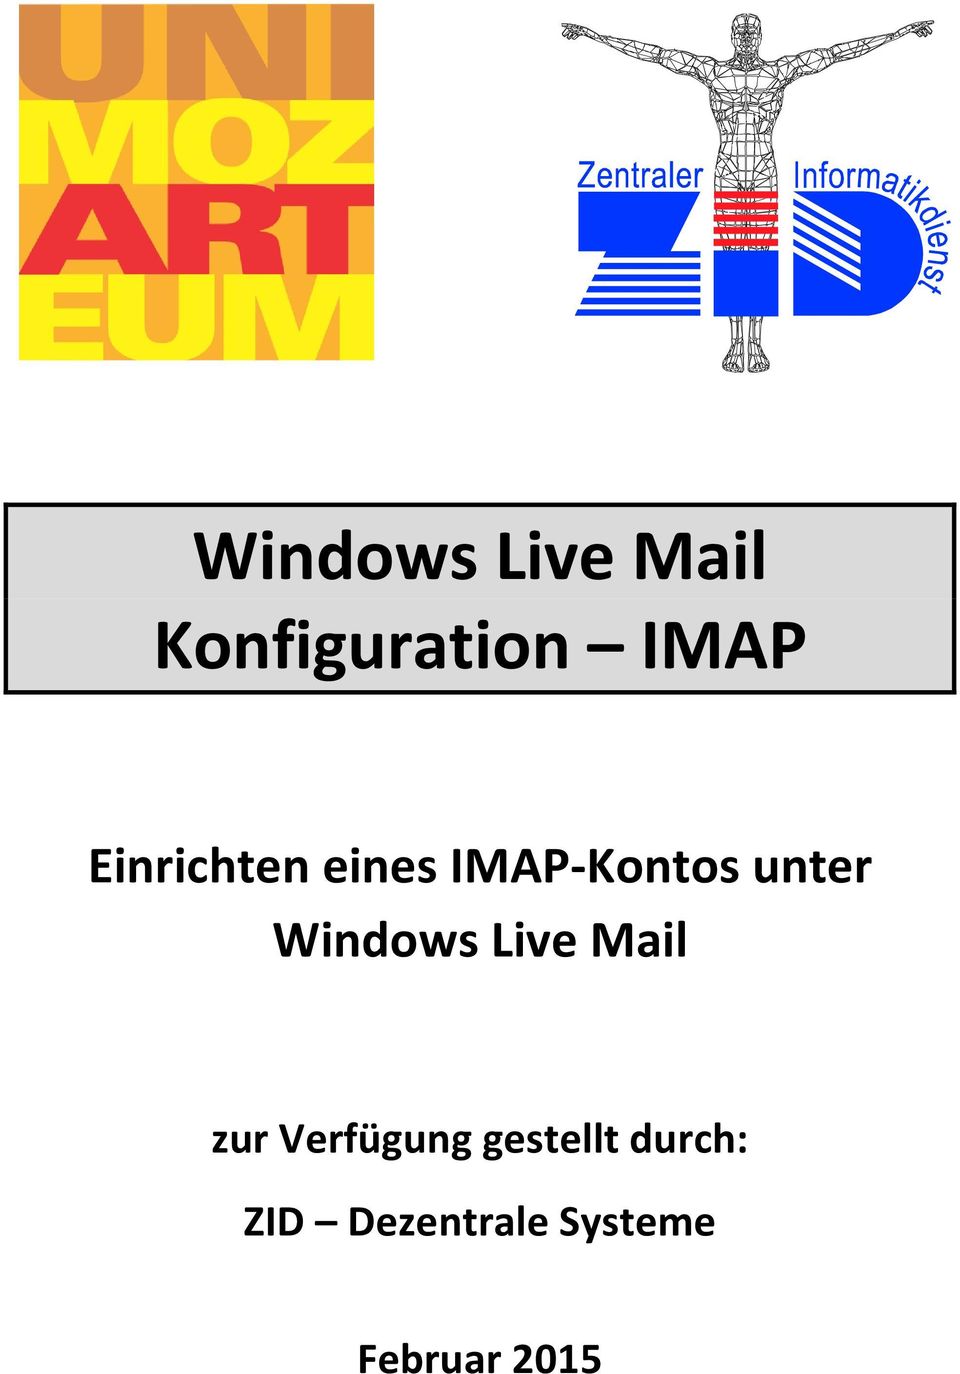 Windows Live Mail zur Verfügung